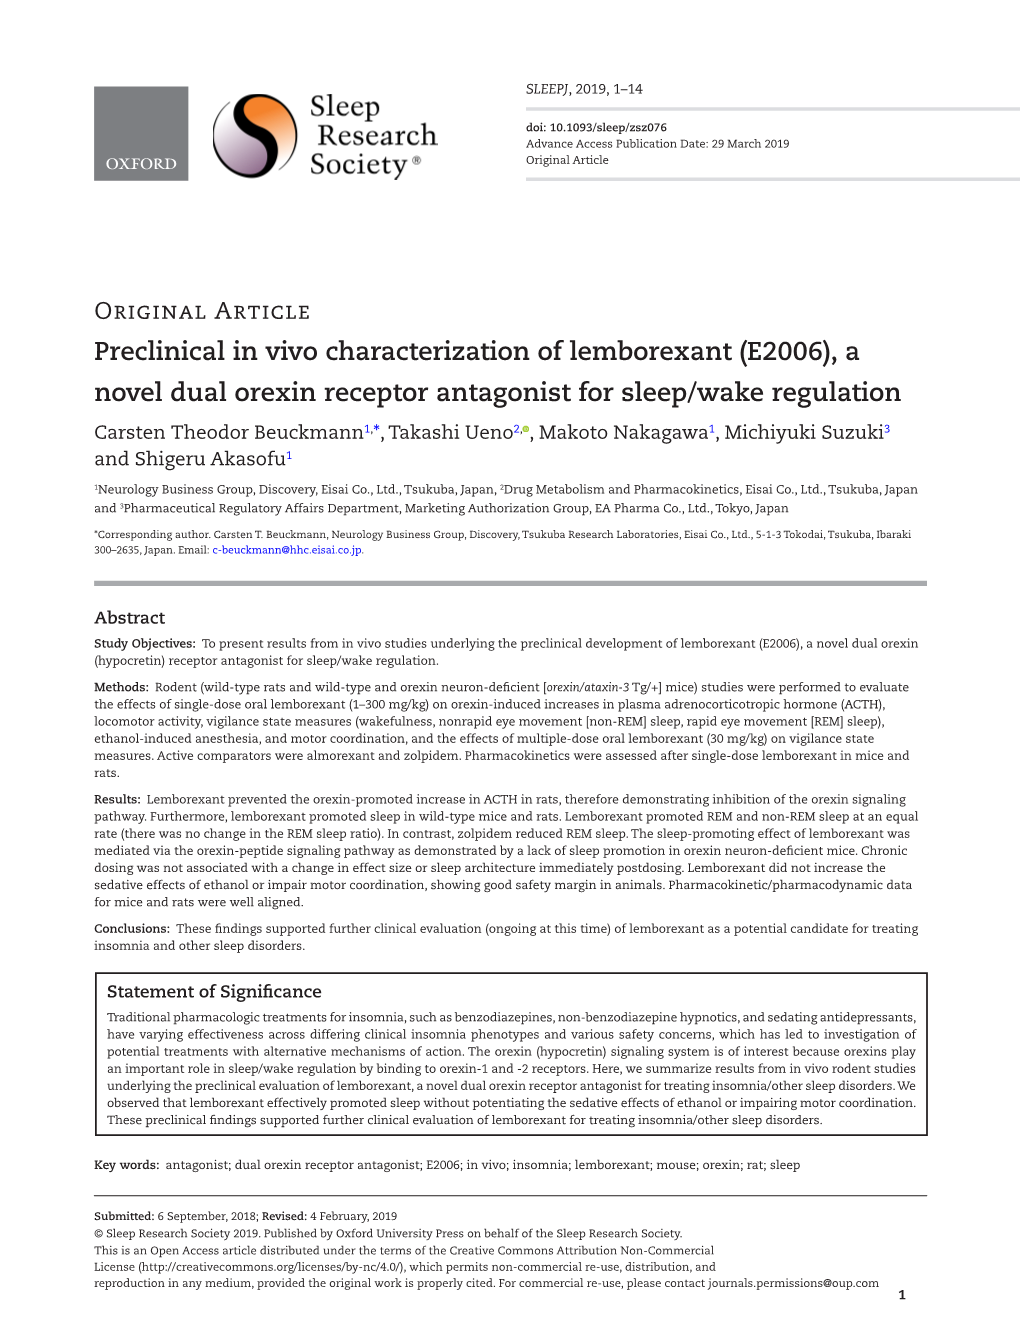 Preclinical in Vivo Characterization of Lemborexant (E2006)